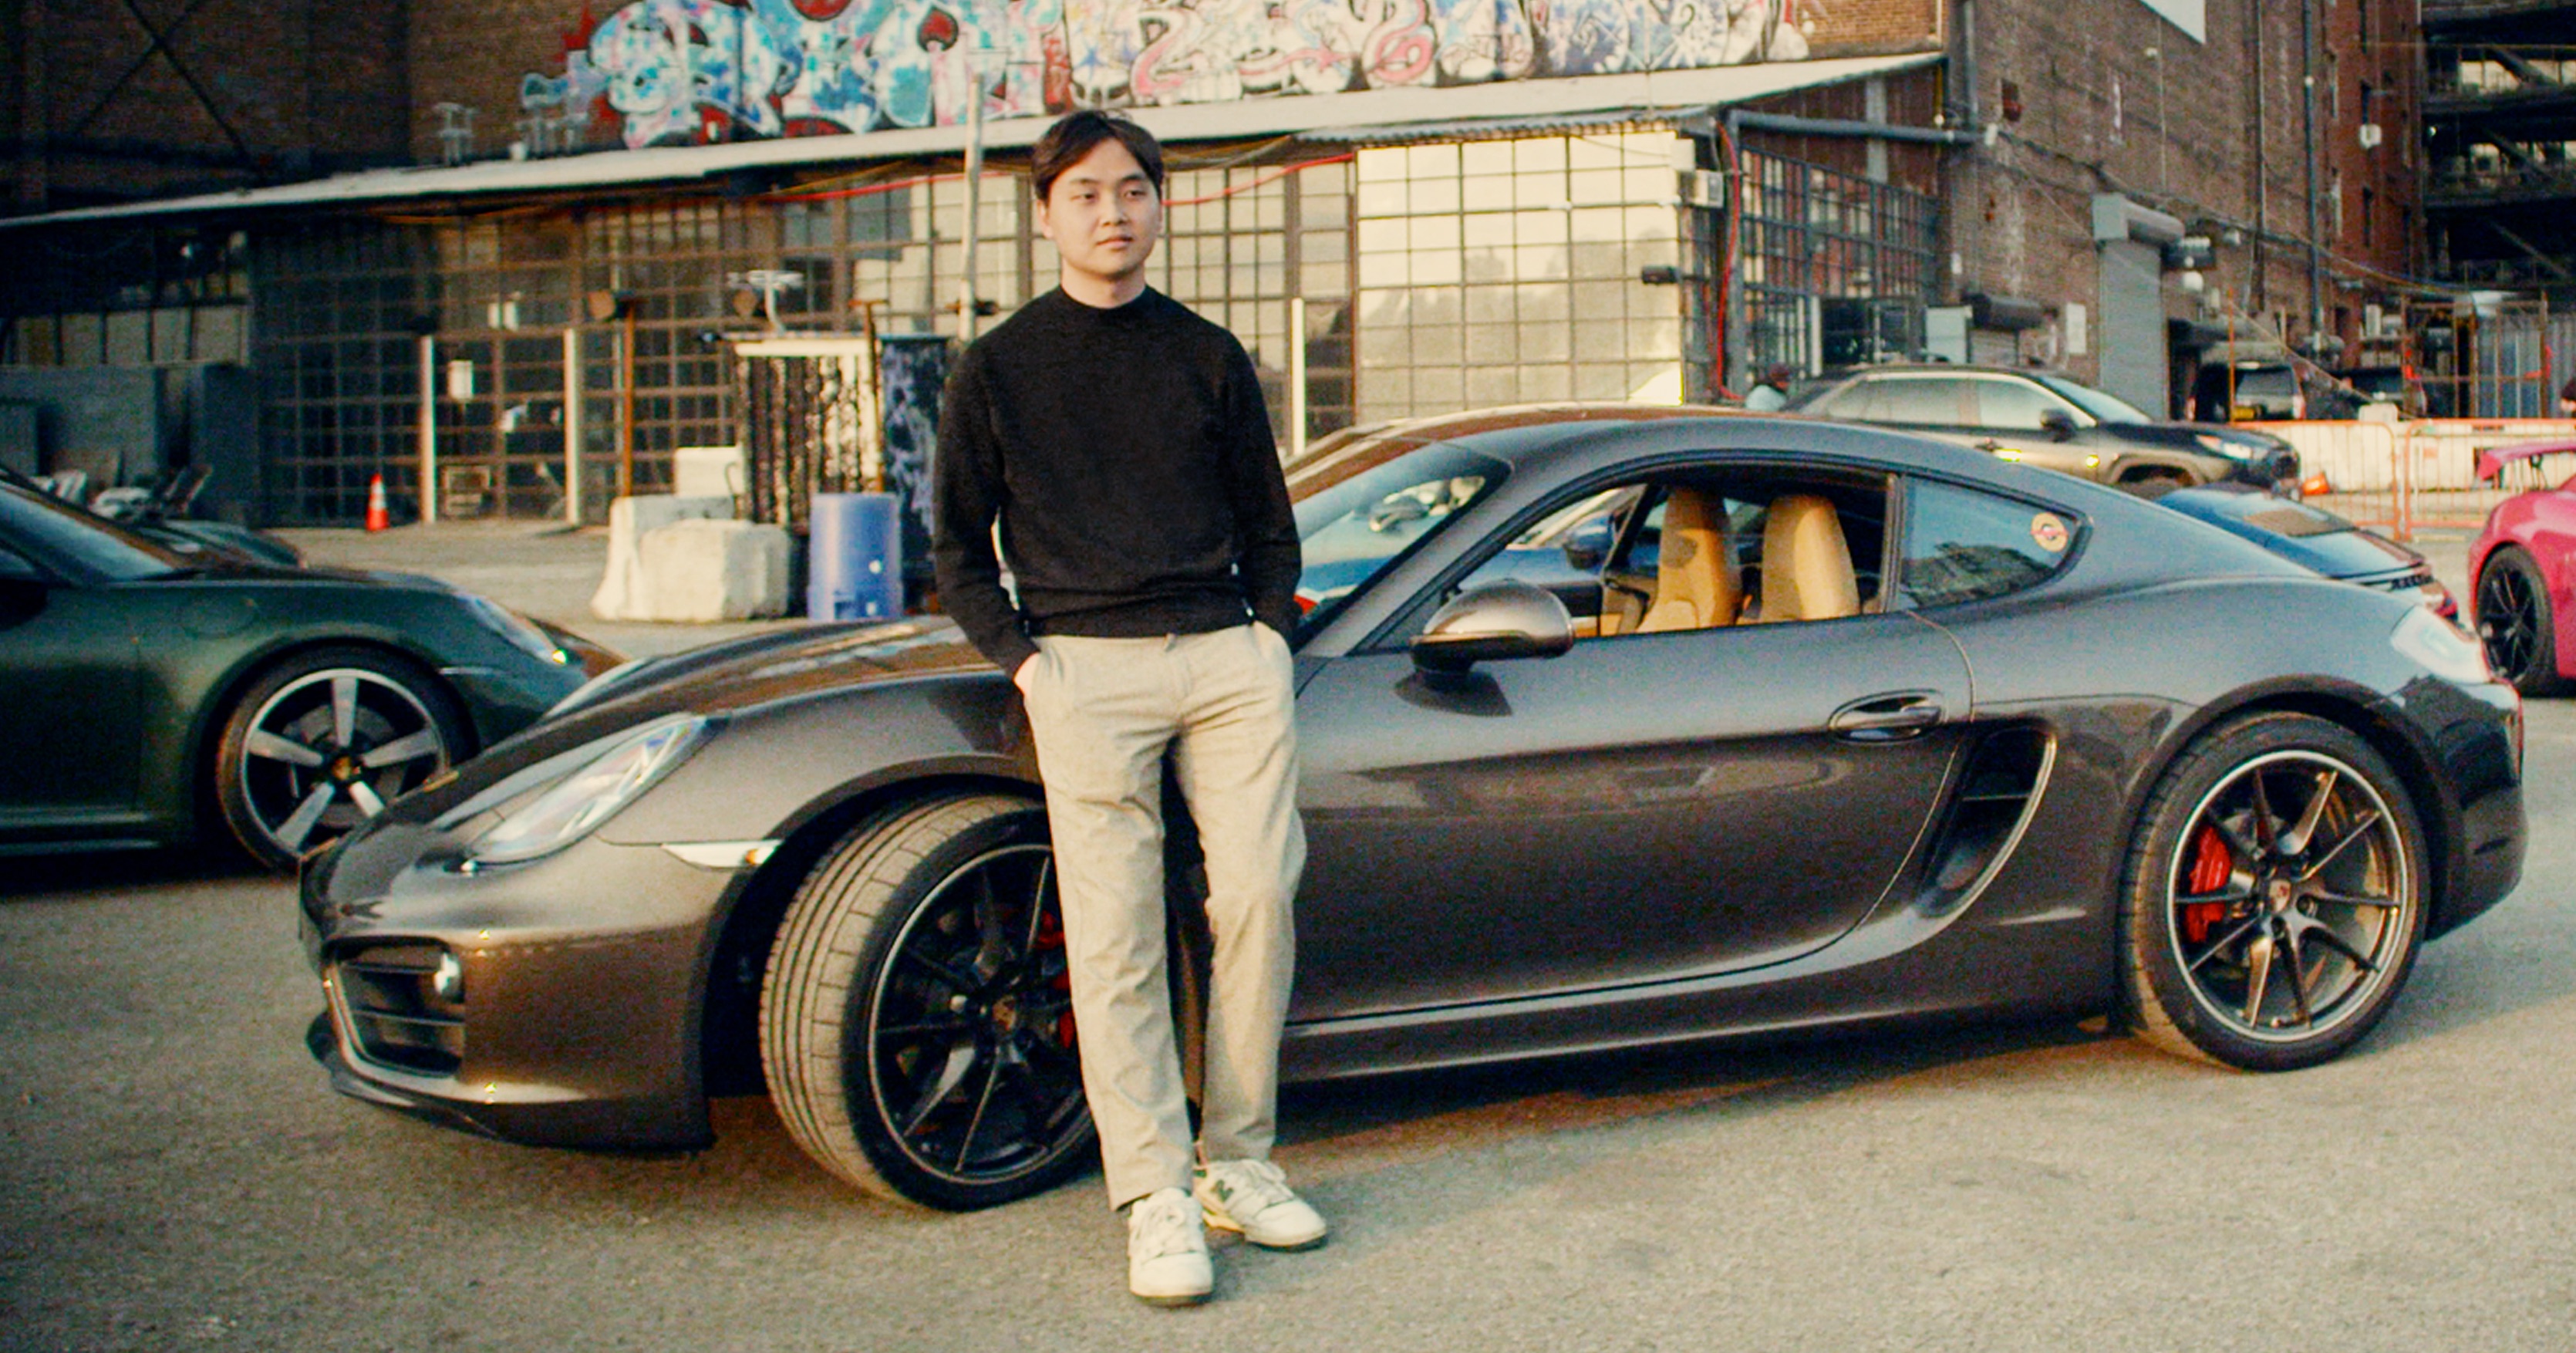 Man in chinos stands next to brown Porsche Cayman